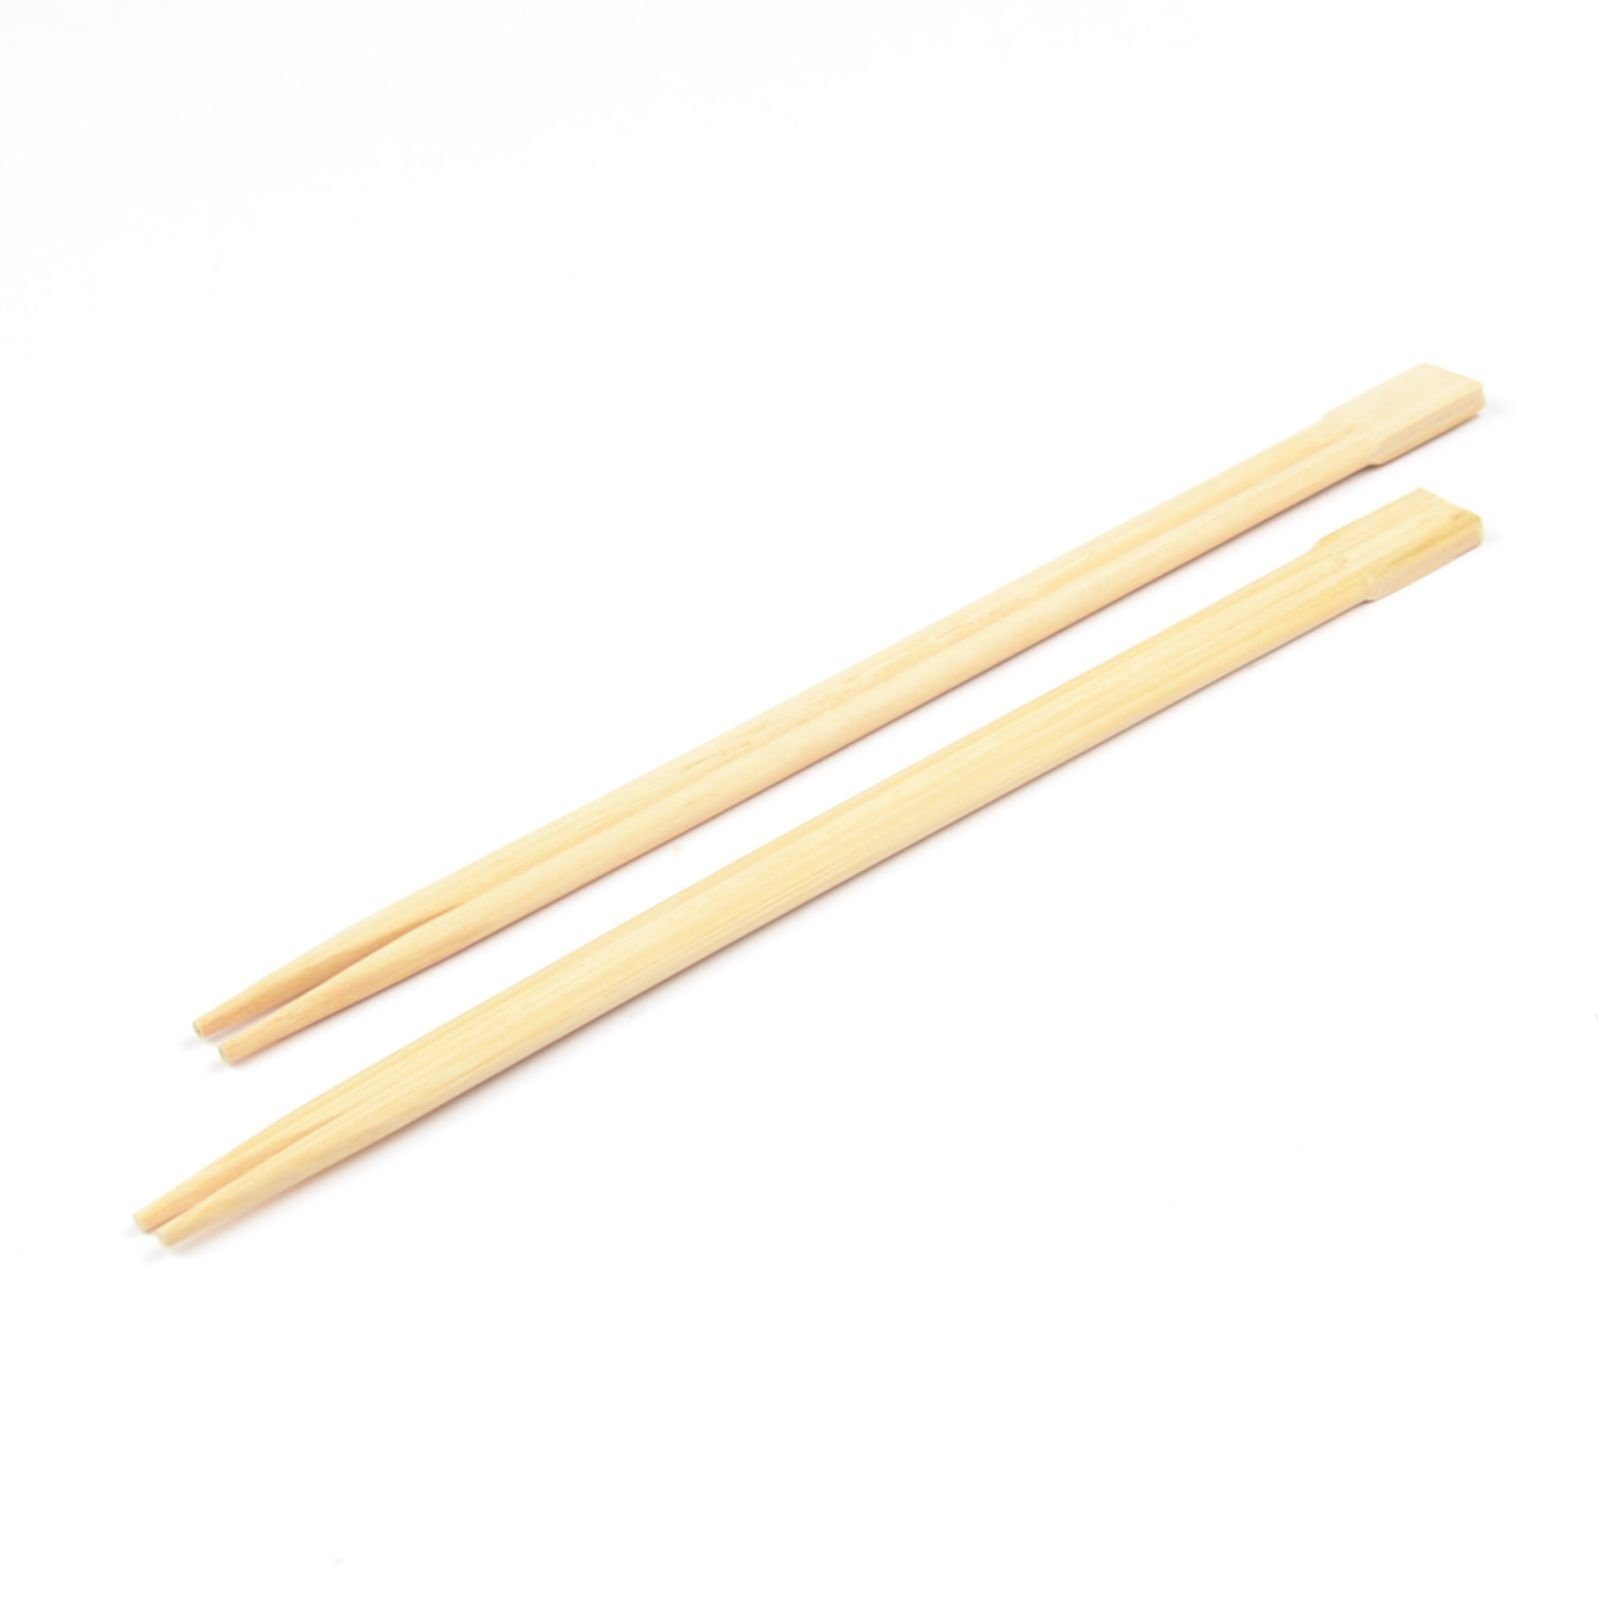 Essstäbchen 100 Paar Essstäbchen aus Bambus, 23 cm paarweise einzeln verpackt, Asiastäbchen Asia-Ess-Stäbchen Essbesteck Reisbesteck Bamboo